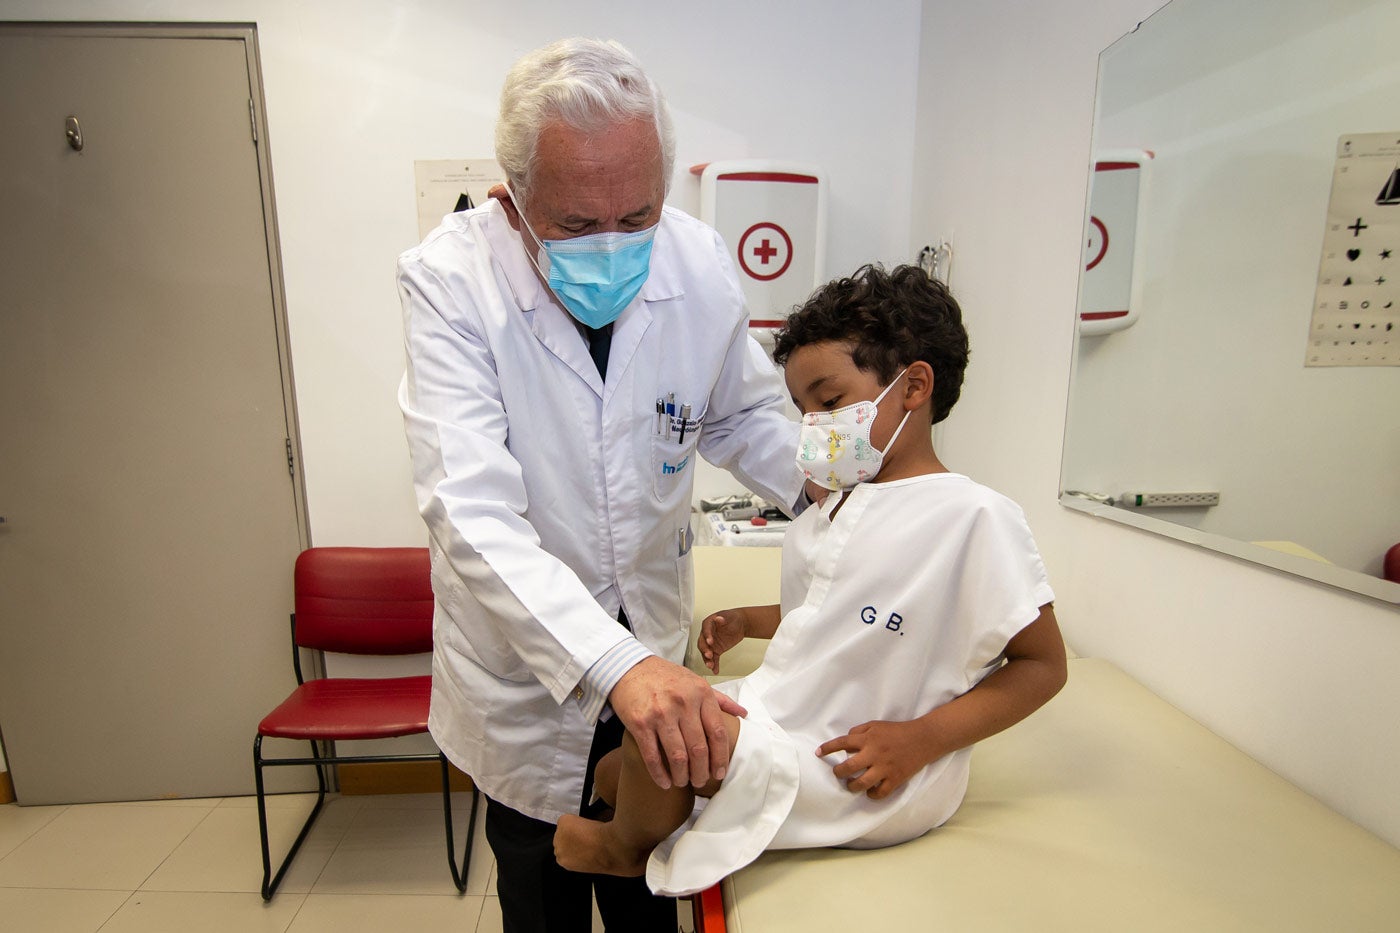 El Dr. Gonzalo Baquero Paret examina a su paciente